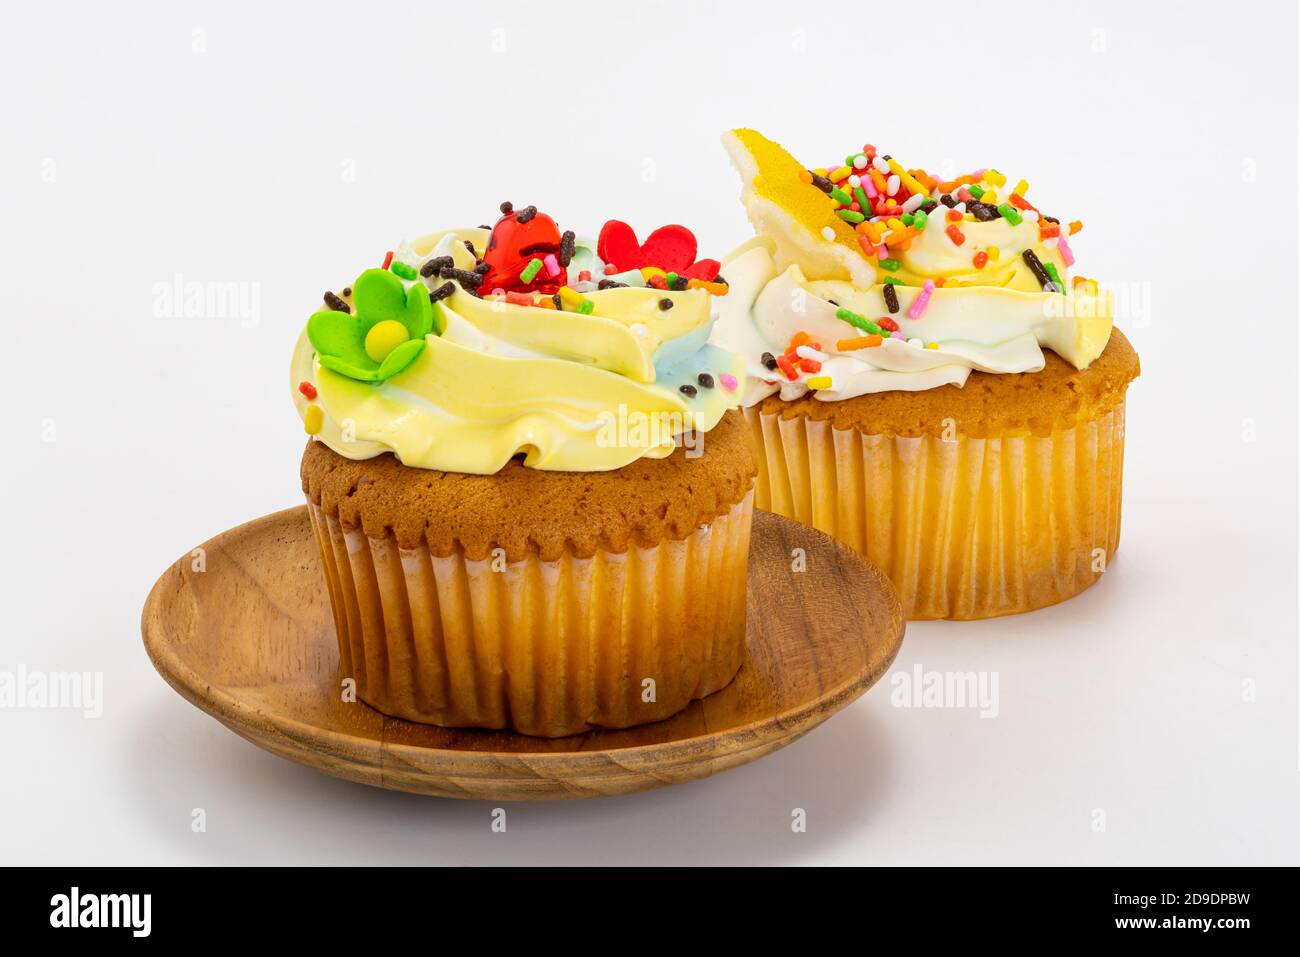 Cupcake alla vaniglia guarnito con gelato alla crema di burro alla vaniglia e spruzzini multicolore in piastra di legno su sfondo bianco con percorso di ritaglio. Foto Stock